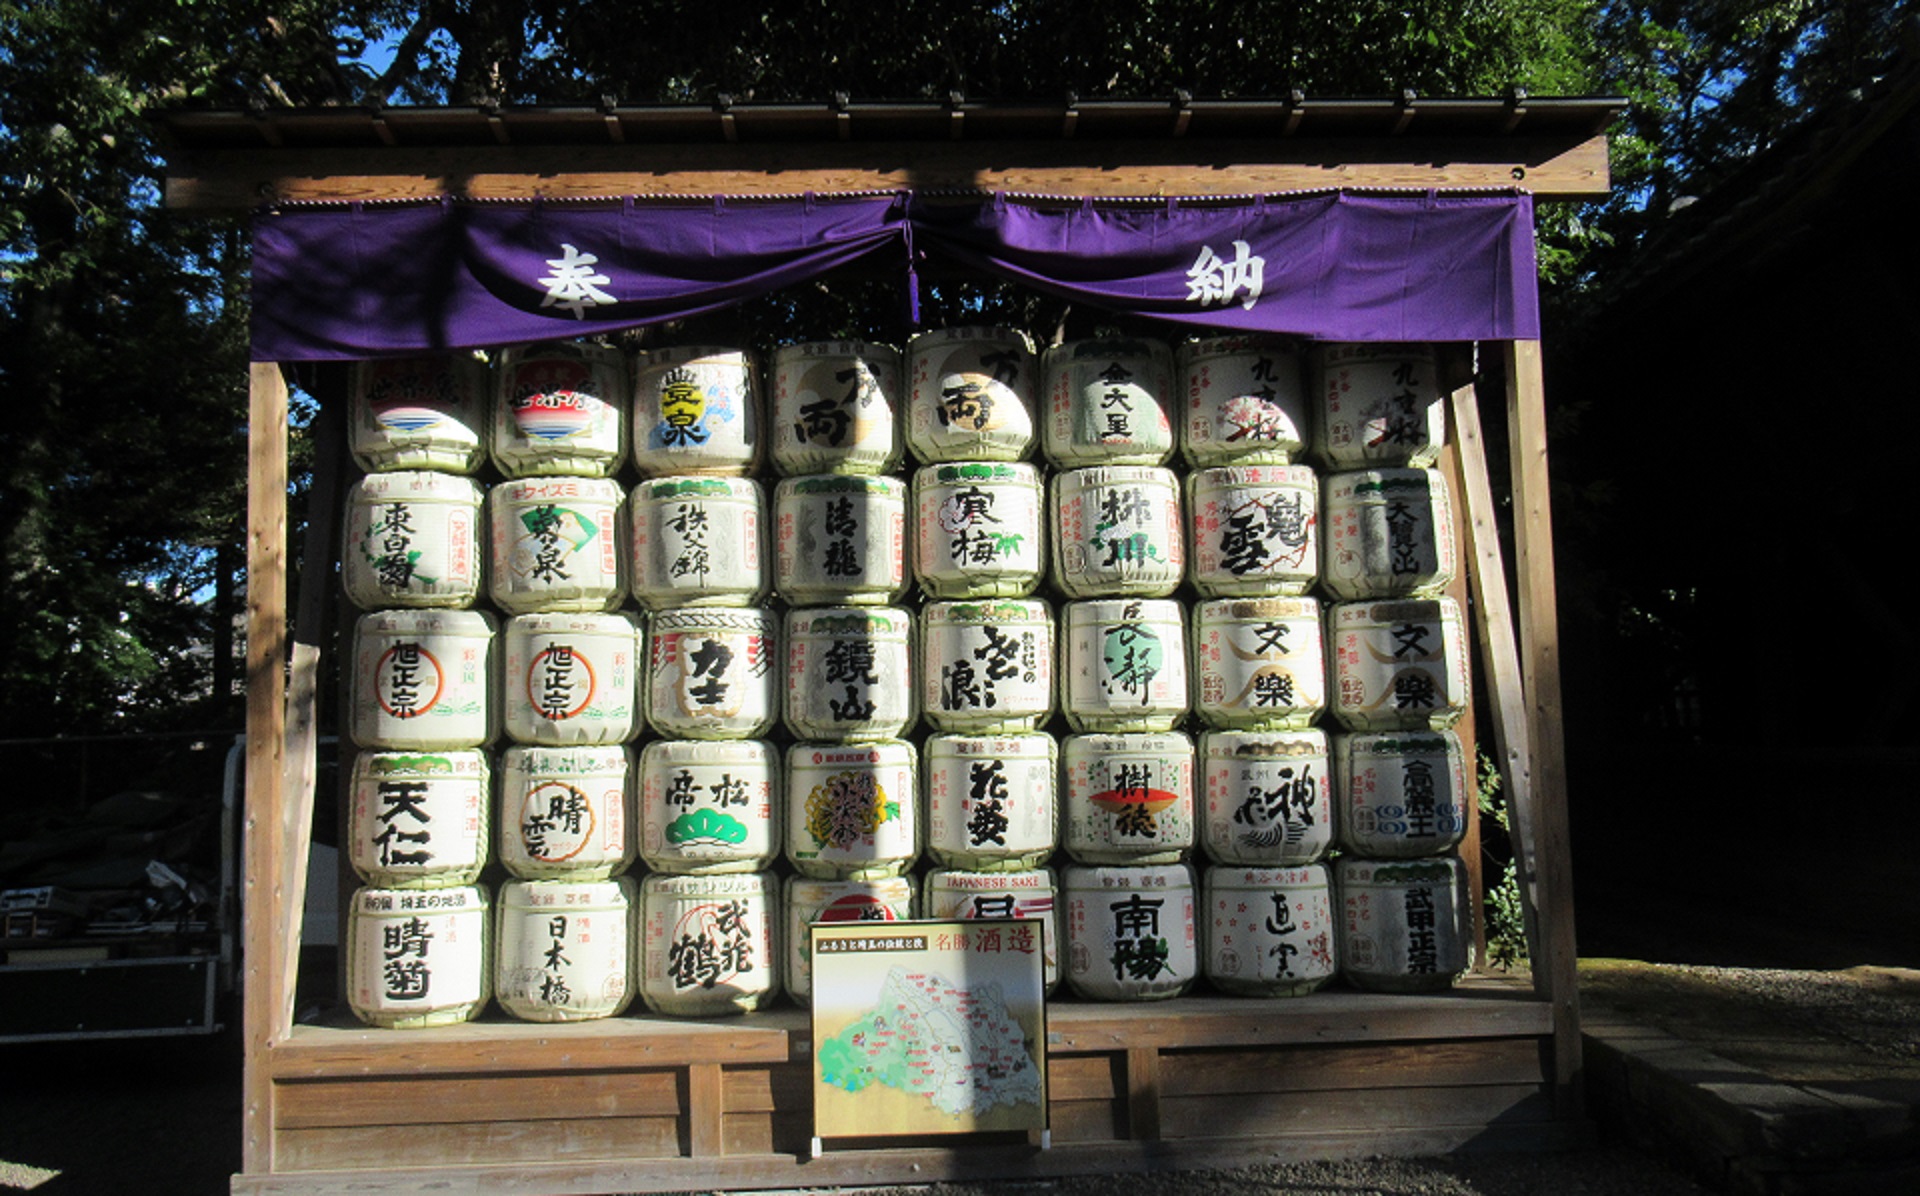 大宮氷川神社へ菰樽を奉納致しました。